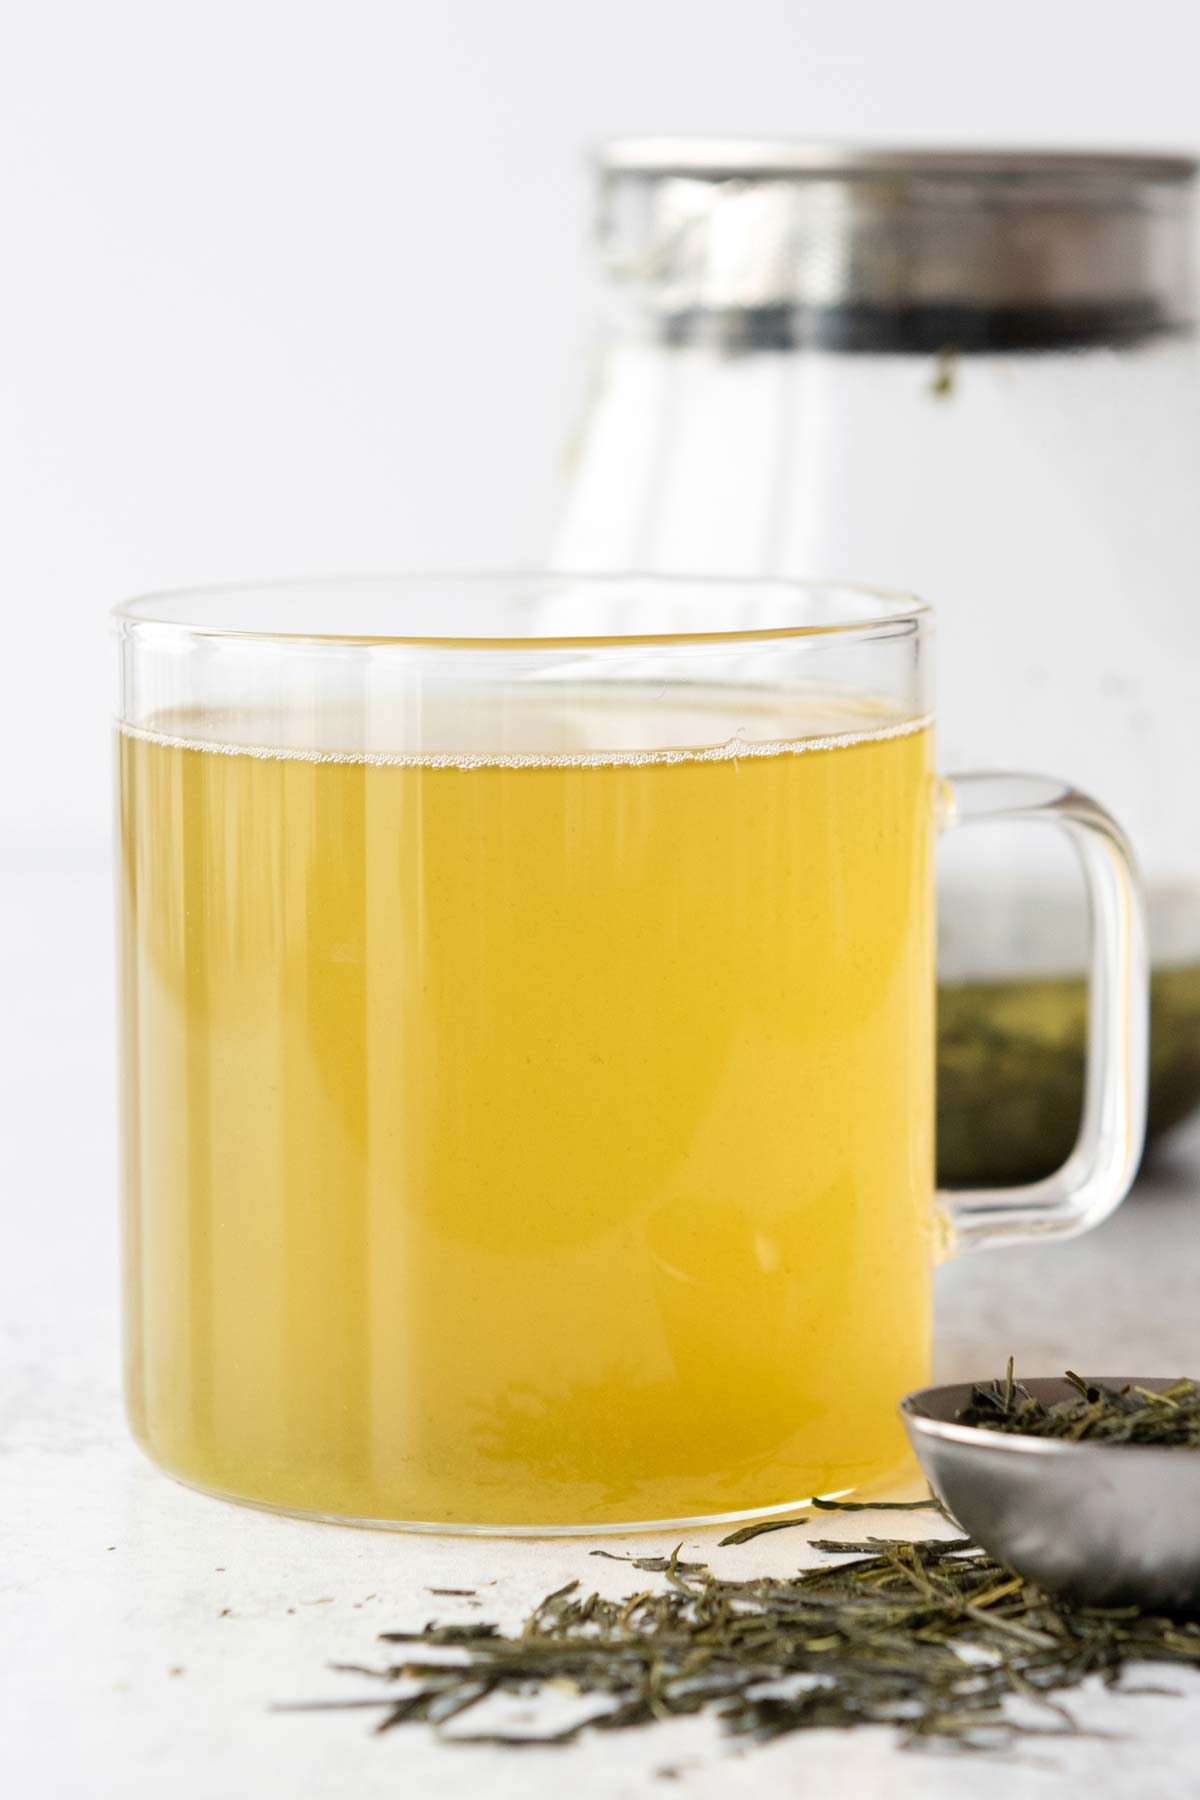 Green tea in a glass mug.